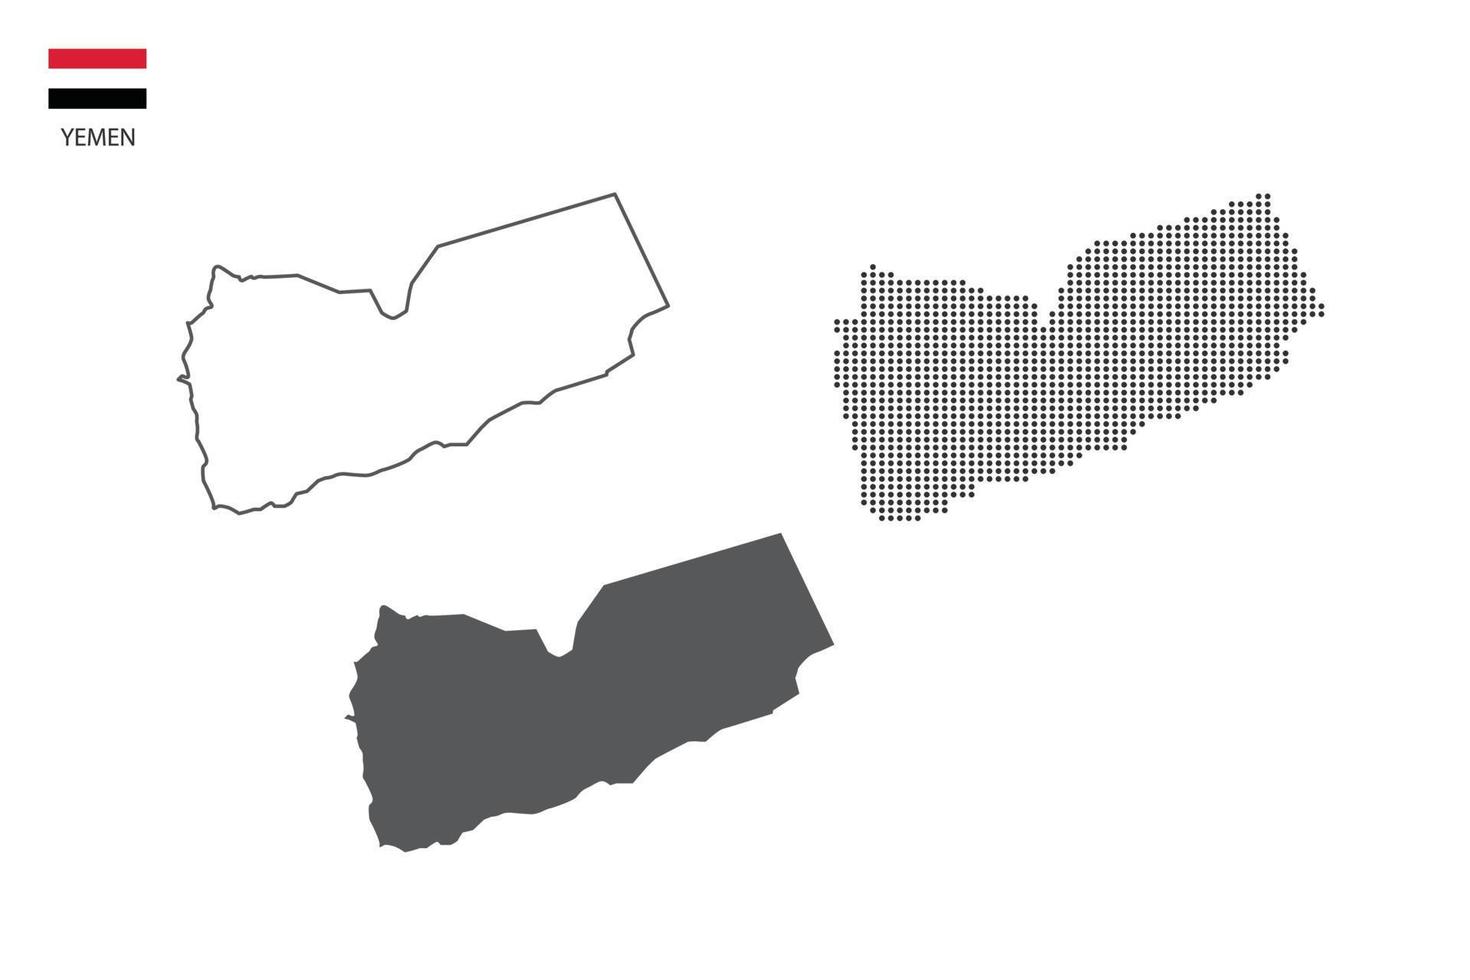 3 versies van Jemen kaart stad vector door dun zwart schets eenvoud stijl, zwart punt stijl en donker schaduw stijl. allemaal in de wit achtergrond.